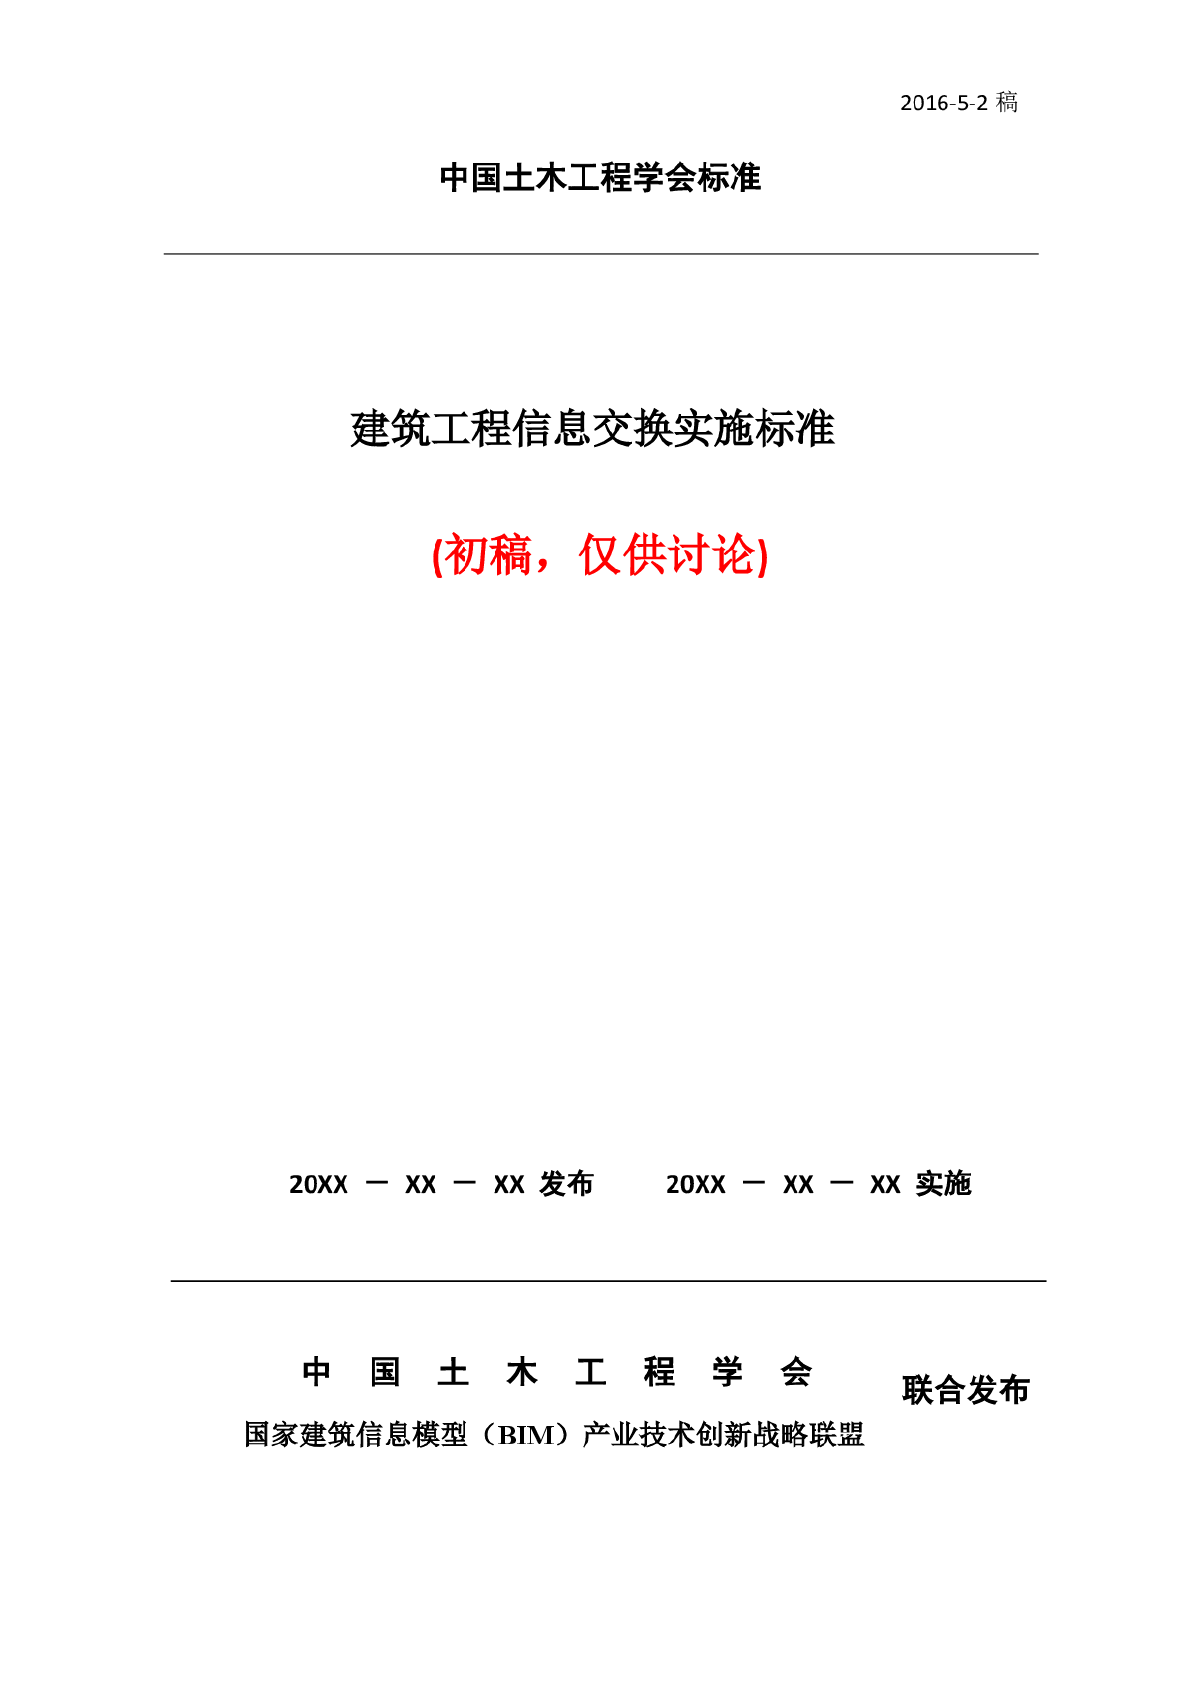 2 中国土木工程学会标准《建筑工程信息交换实施标准》（初稿）-更新